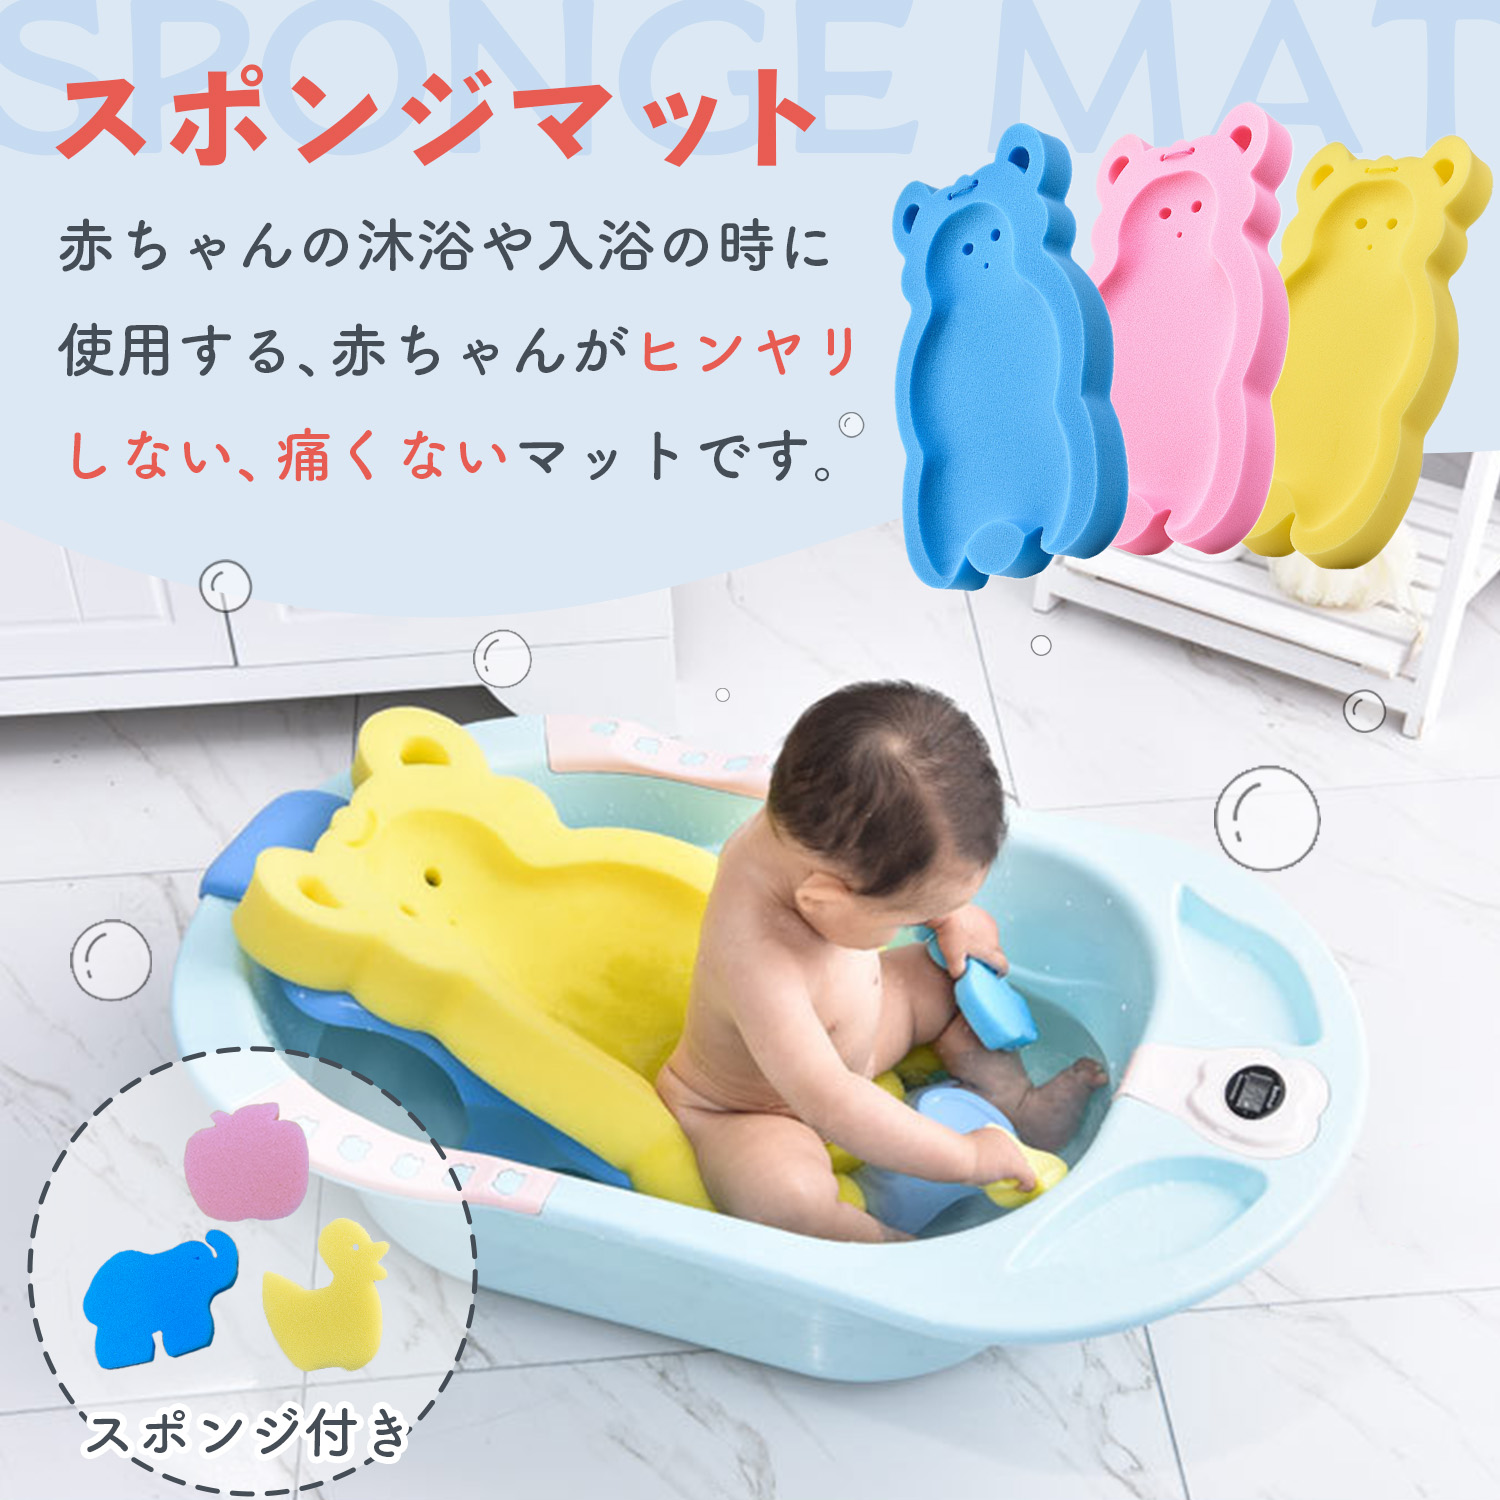  ванна коврик младенец ванна детская ванночка коврик товары для малышей товары для малышей новорожденный .. baby уход baby купальный губка коврик ванна коврик автобус подушка 